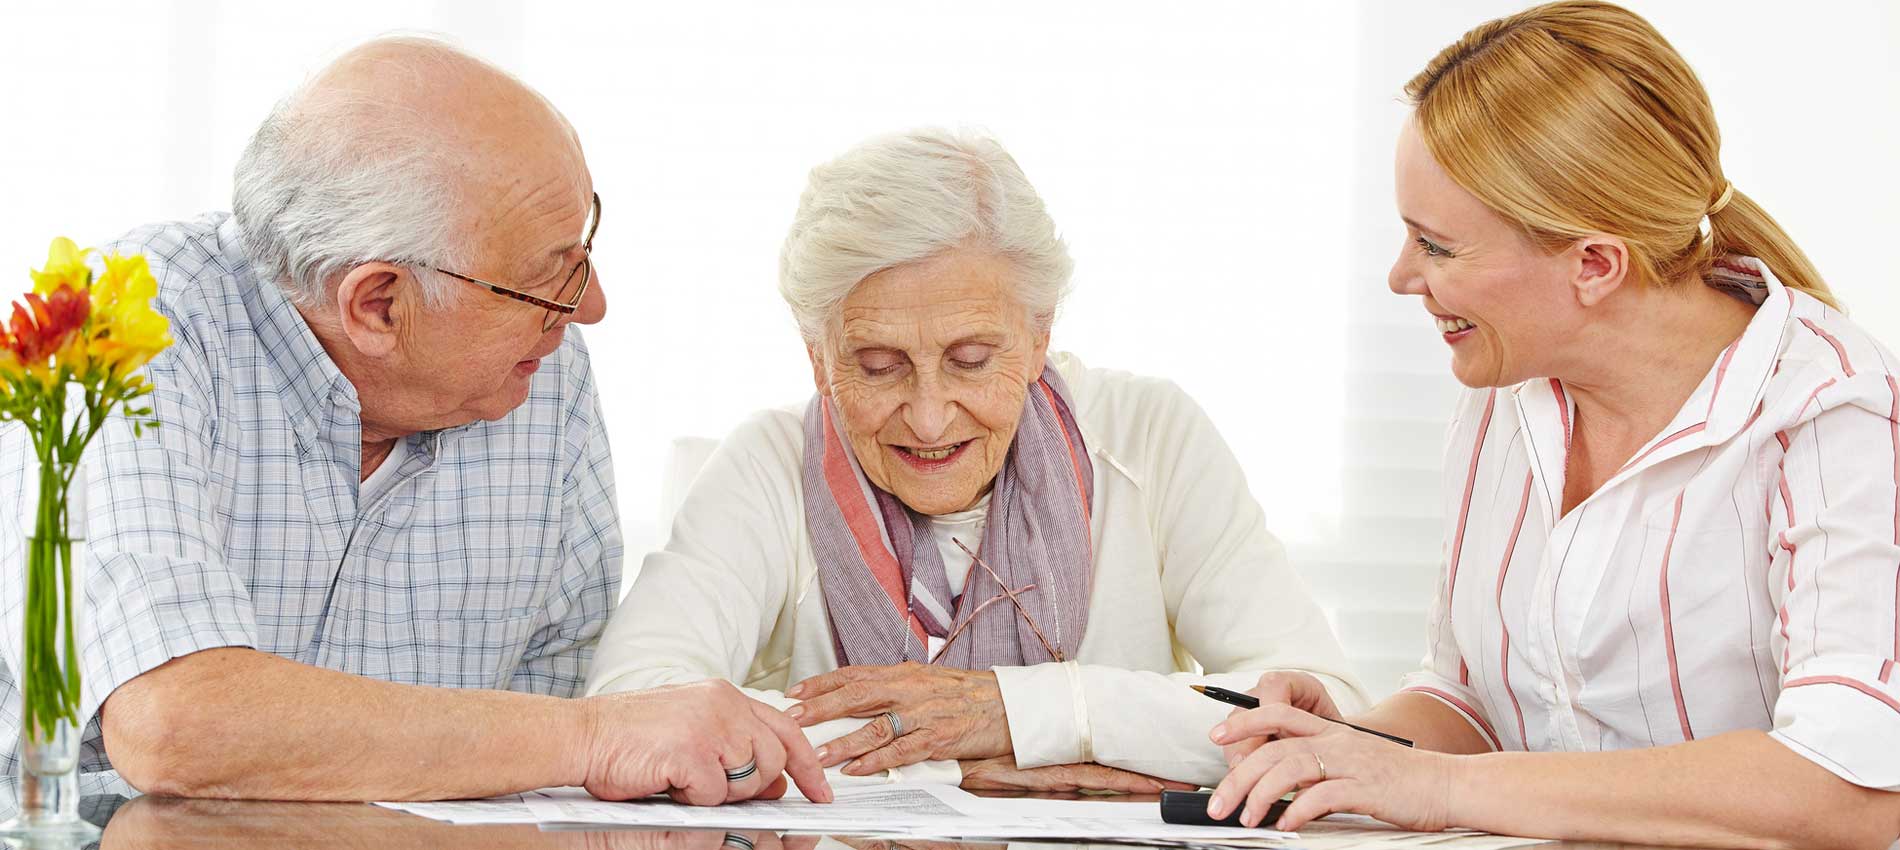 24h-Betreuung und Seniorenbetreuung zuhause | Betreuungslotse24 | Vermittlungsablauf